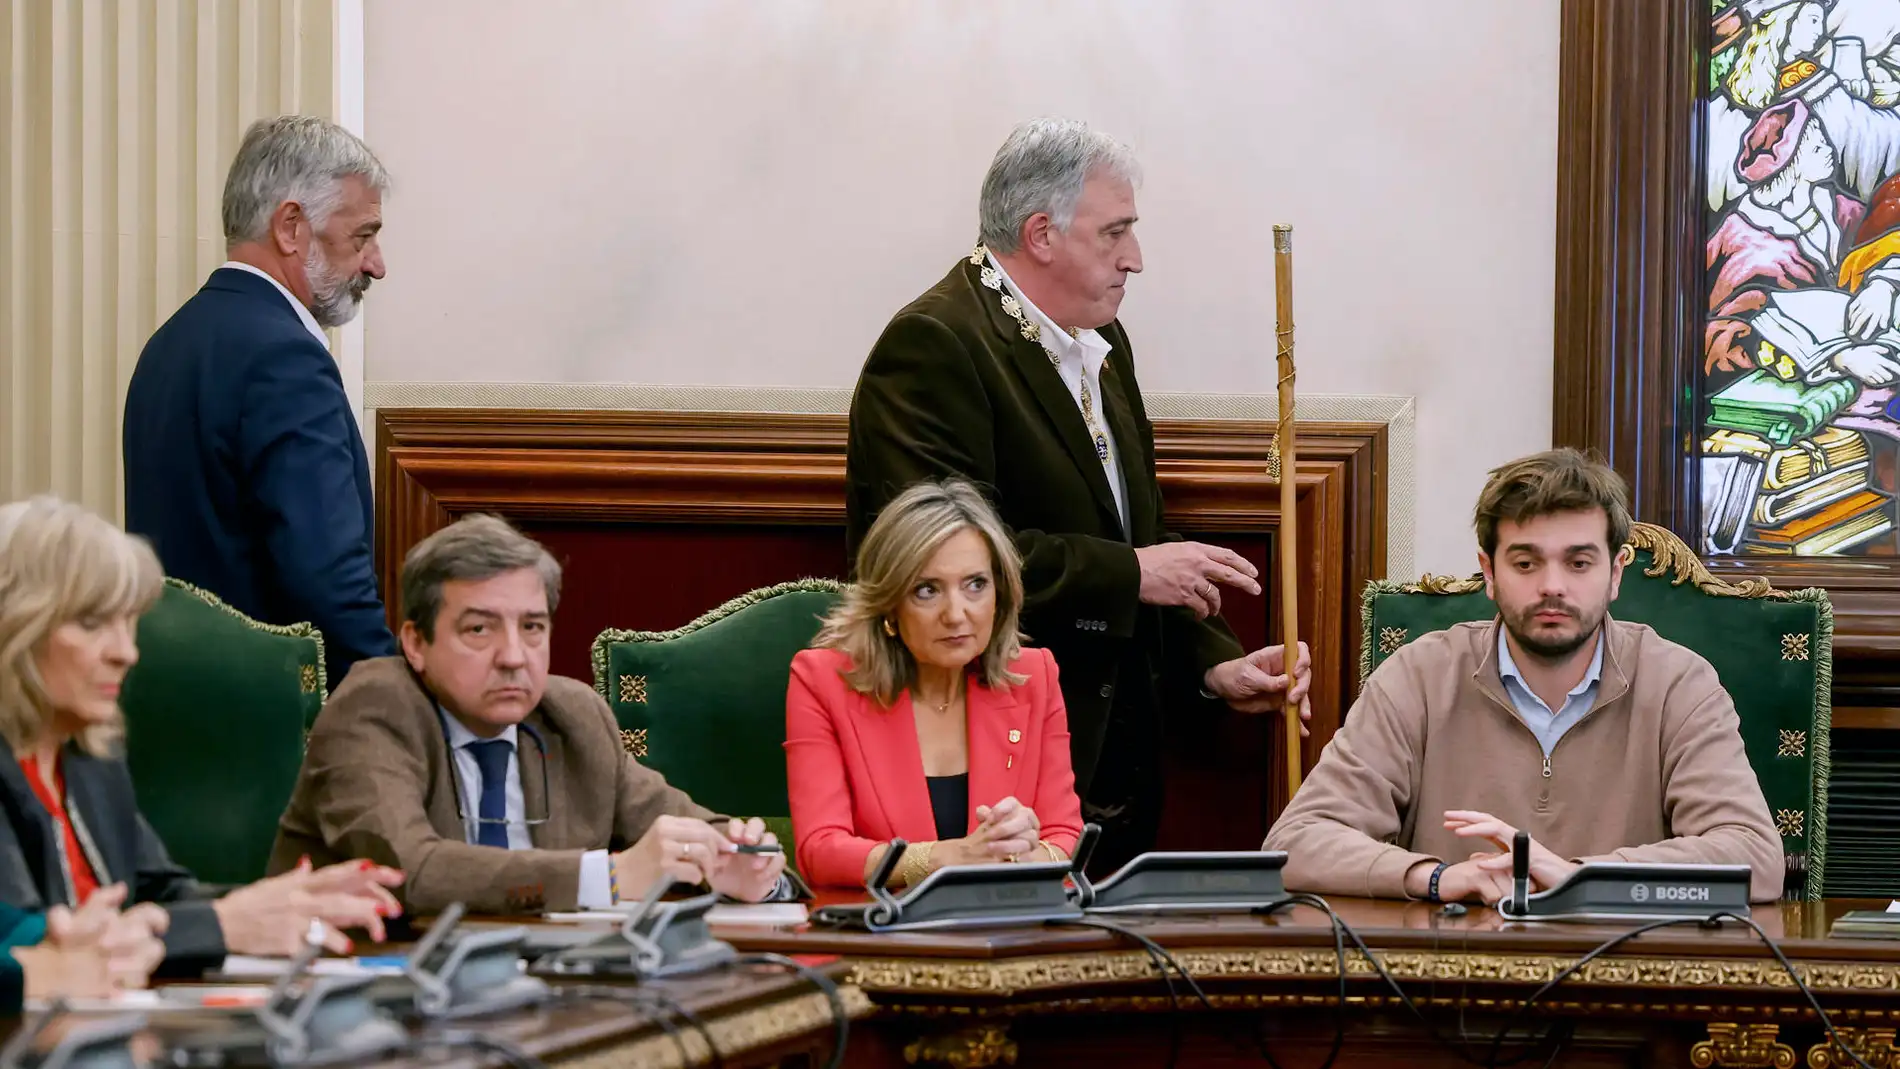 El diputado de EH Bildu, Joseba Asiron pasa con el bastón de mando junto a su predecesora en el cargo, Cristina Ibarrola tras proclamarse alcalde de Pamplona